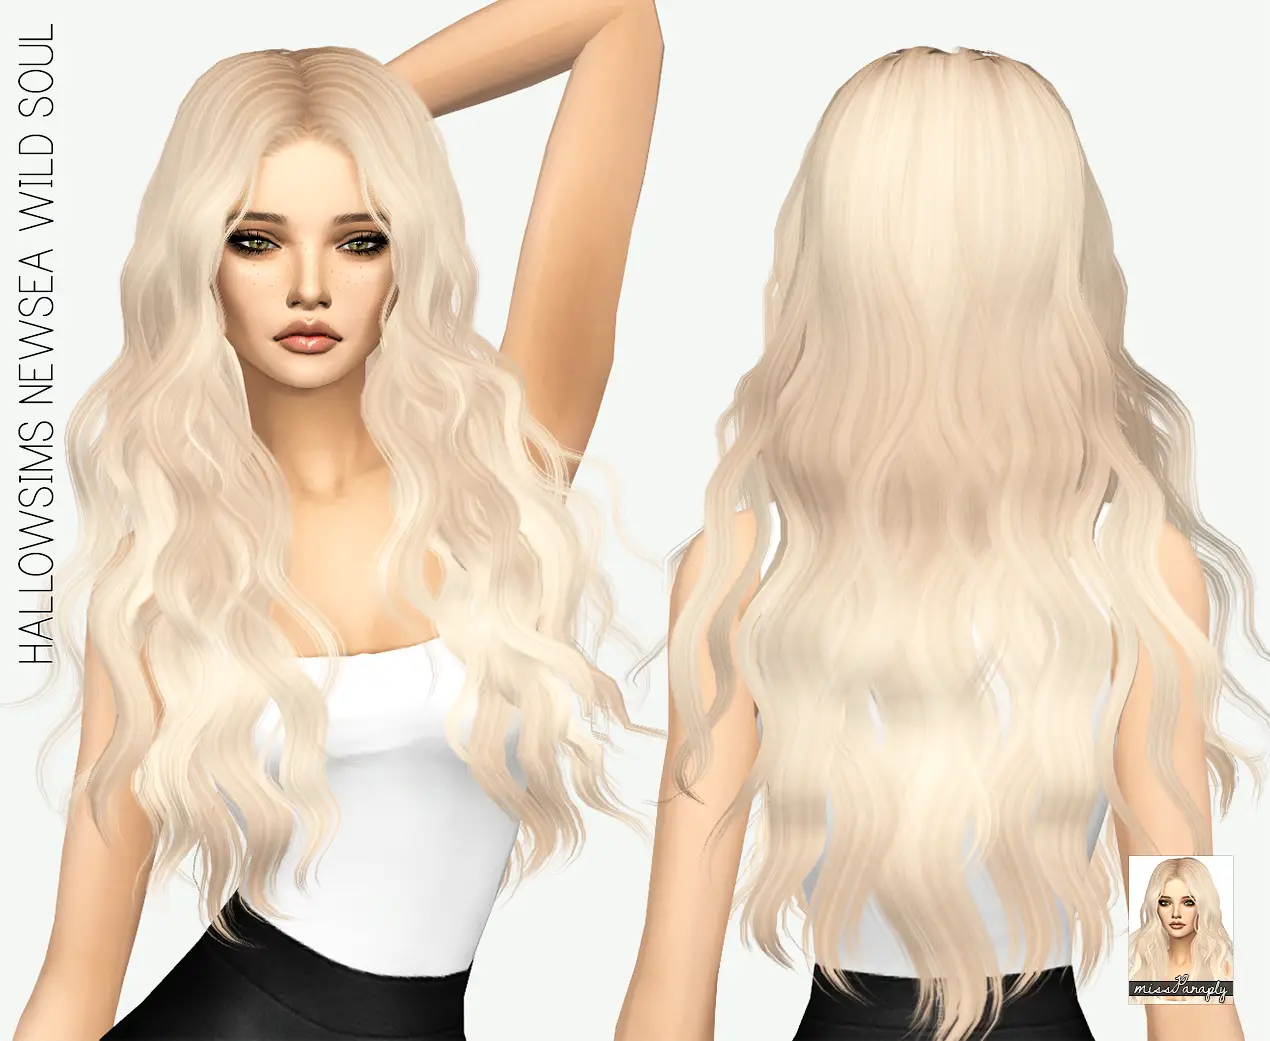 Sims 4 Short Blue Hair Female - wide 8